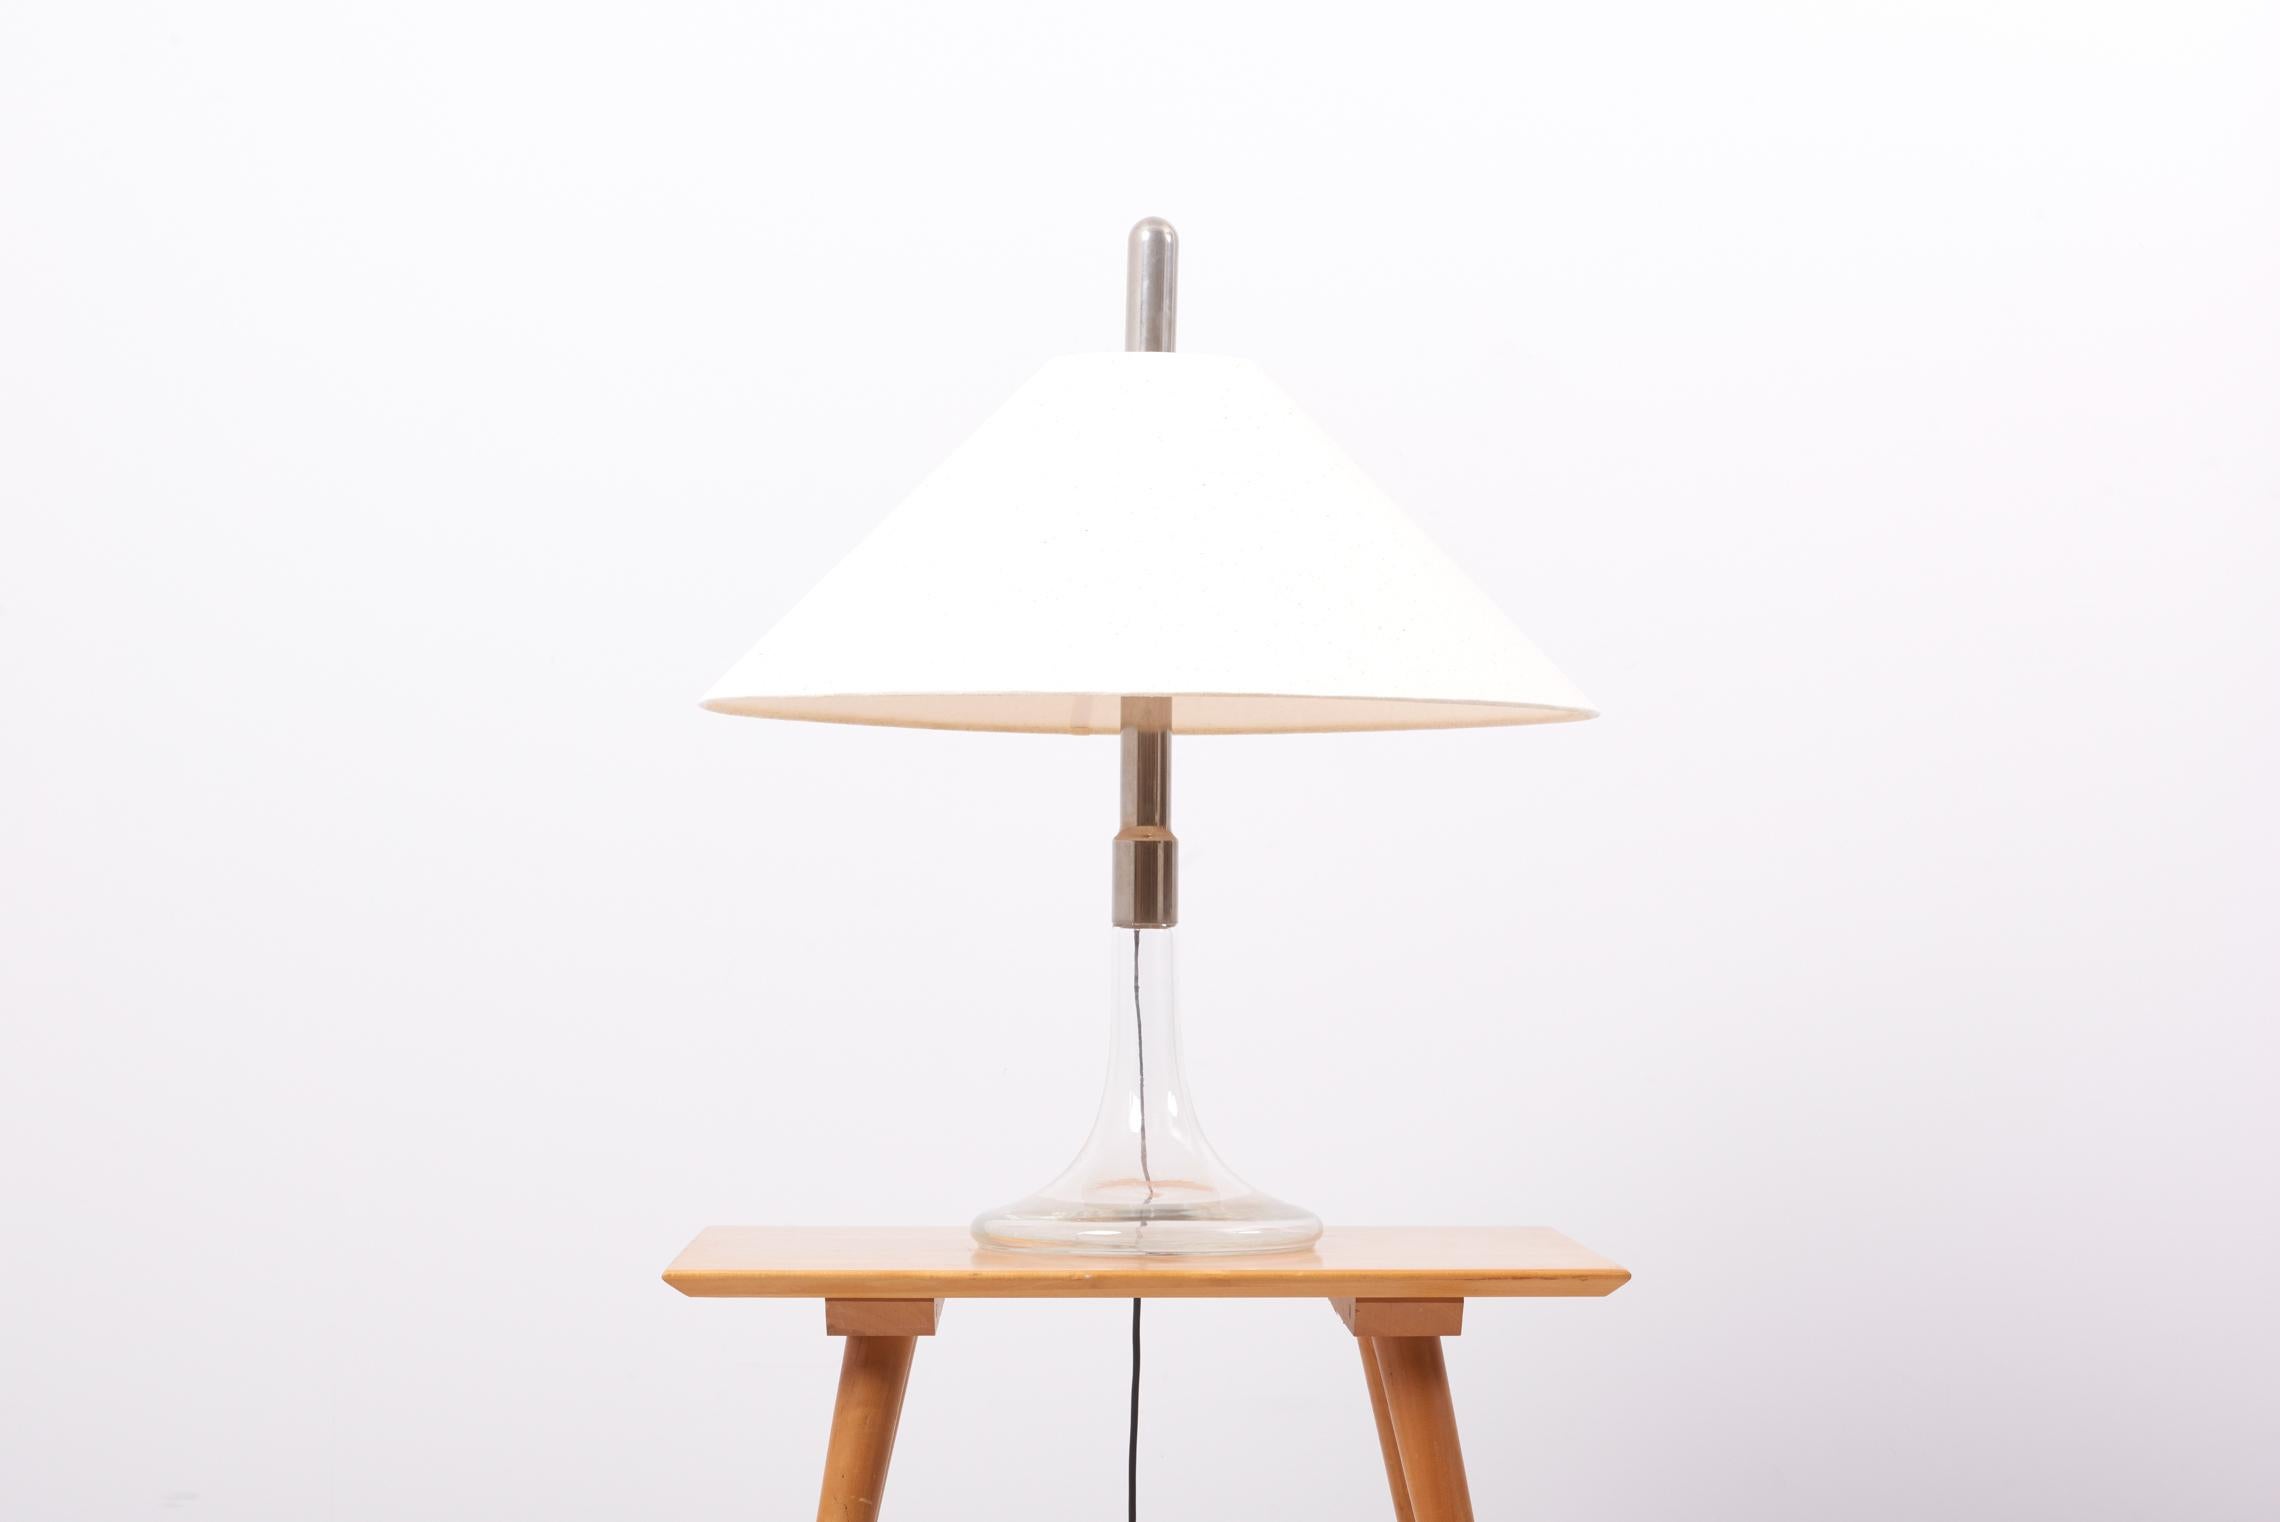 Lampe de table des années 1960, modèle ML3, conçue et produite par Ingo Maurer en Allemagne.
Base en verre et chrome. Y compris un nouvel abat-jour en soie naturelle beige.

2 x douilles E27.

Remarque : la lampe doit être installée par un